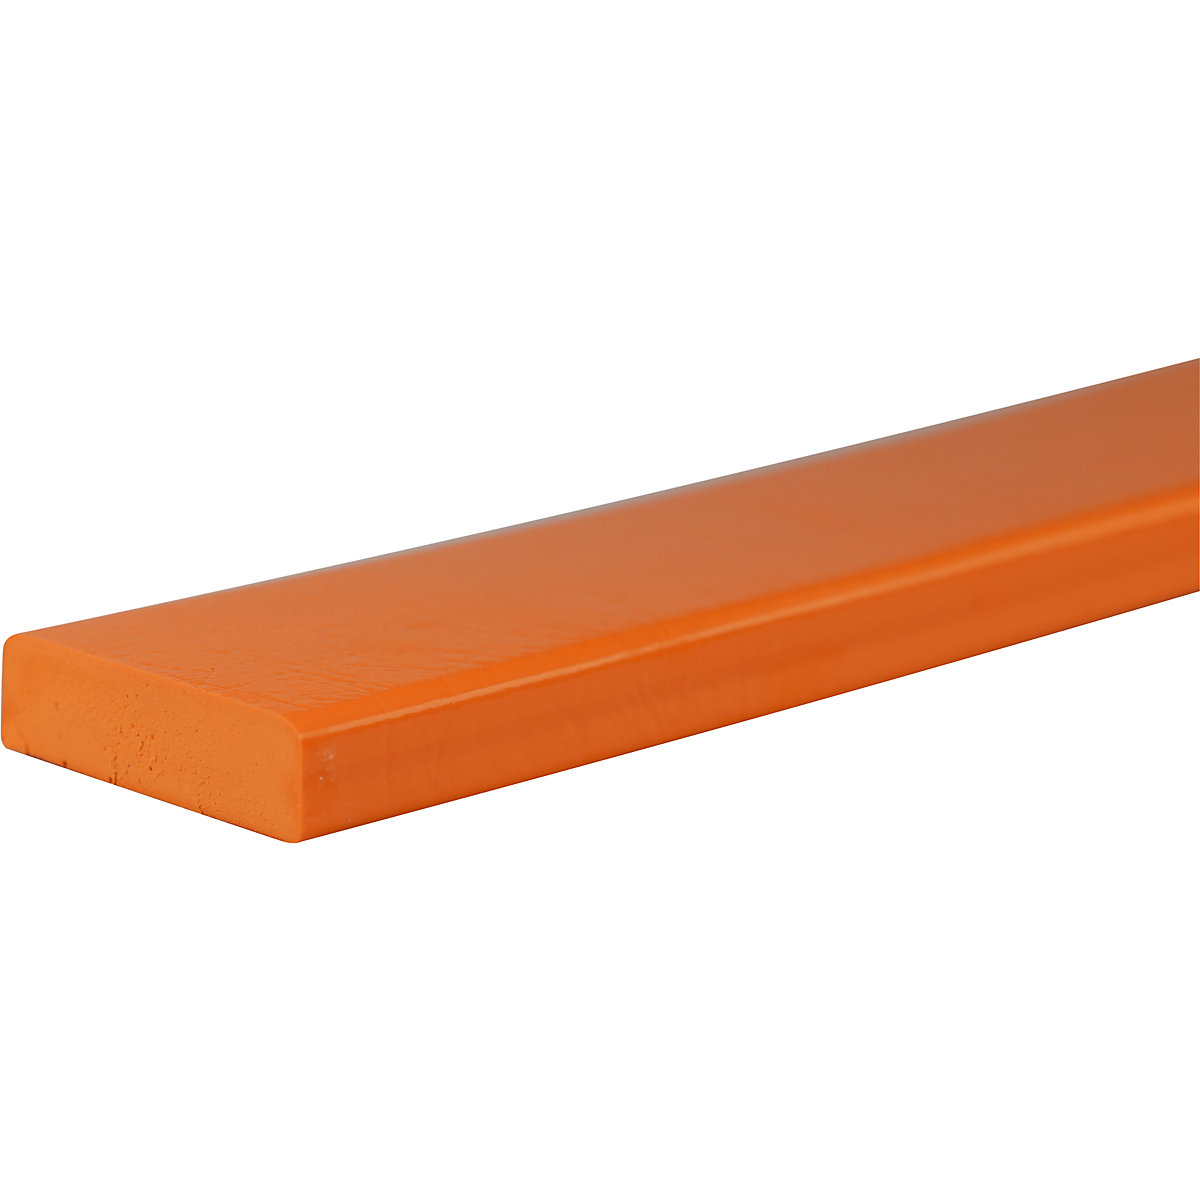 Zabezpieczenie powierzchni Knuffi® – SHG, typ S, szt. 1 m, pomarańczowy-30